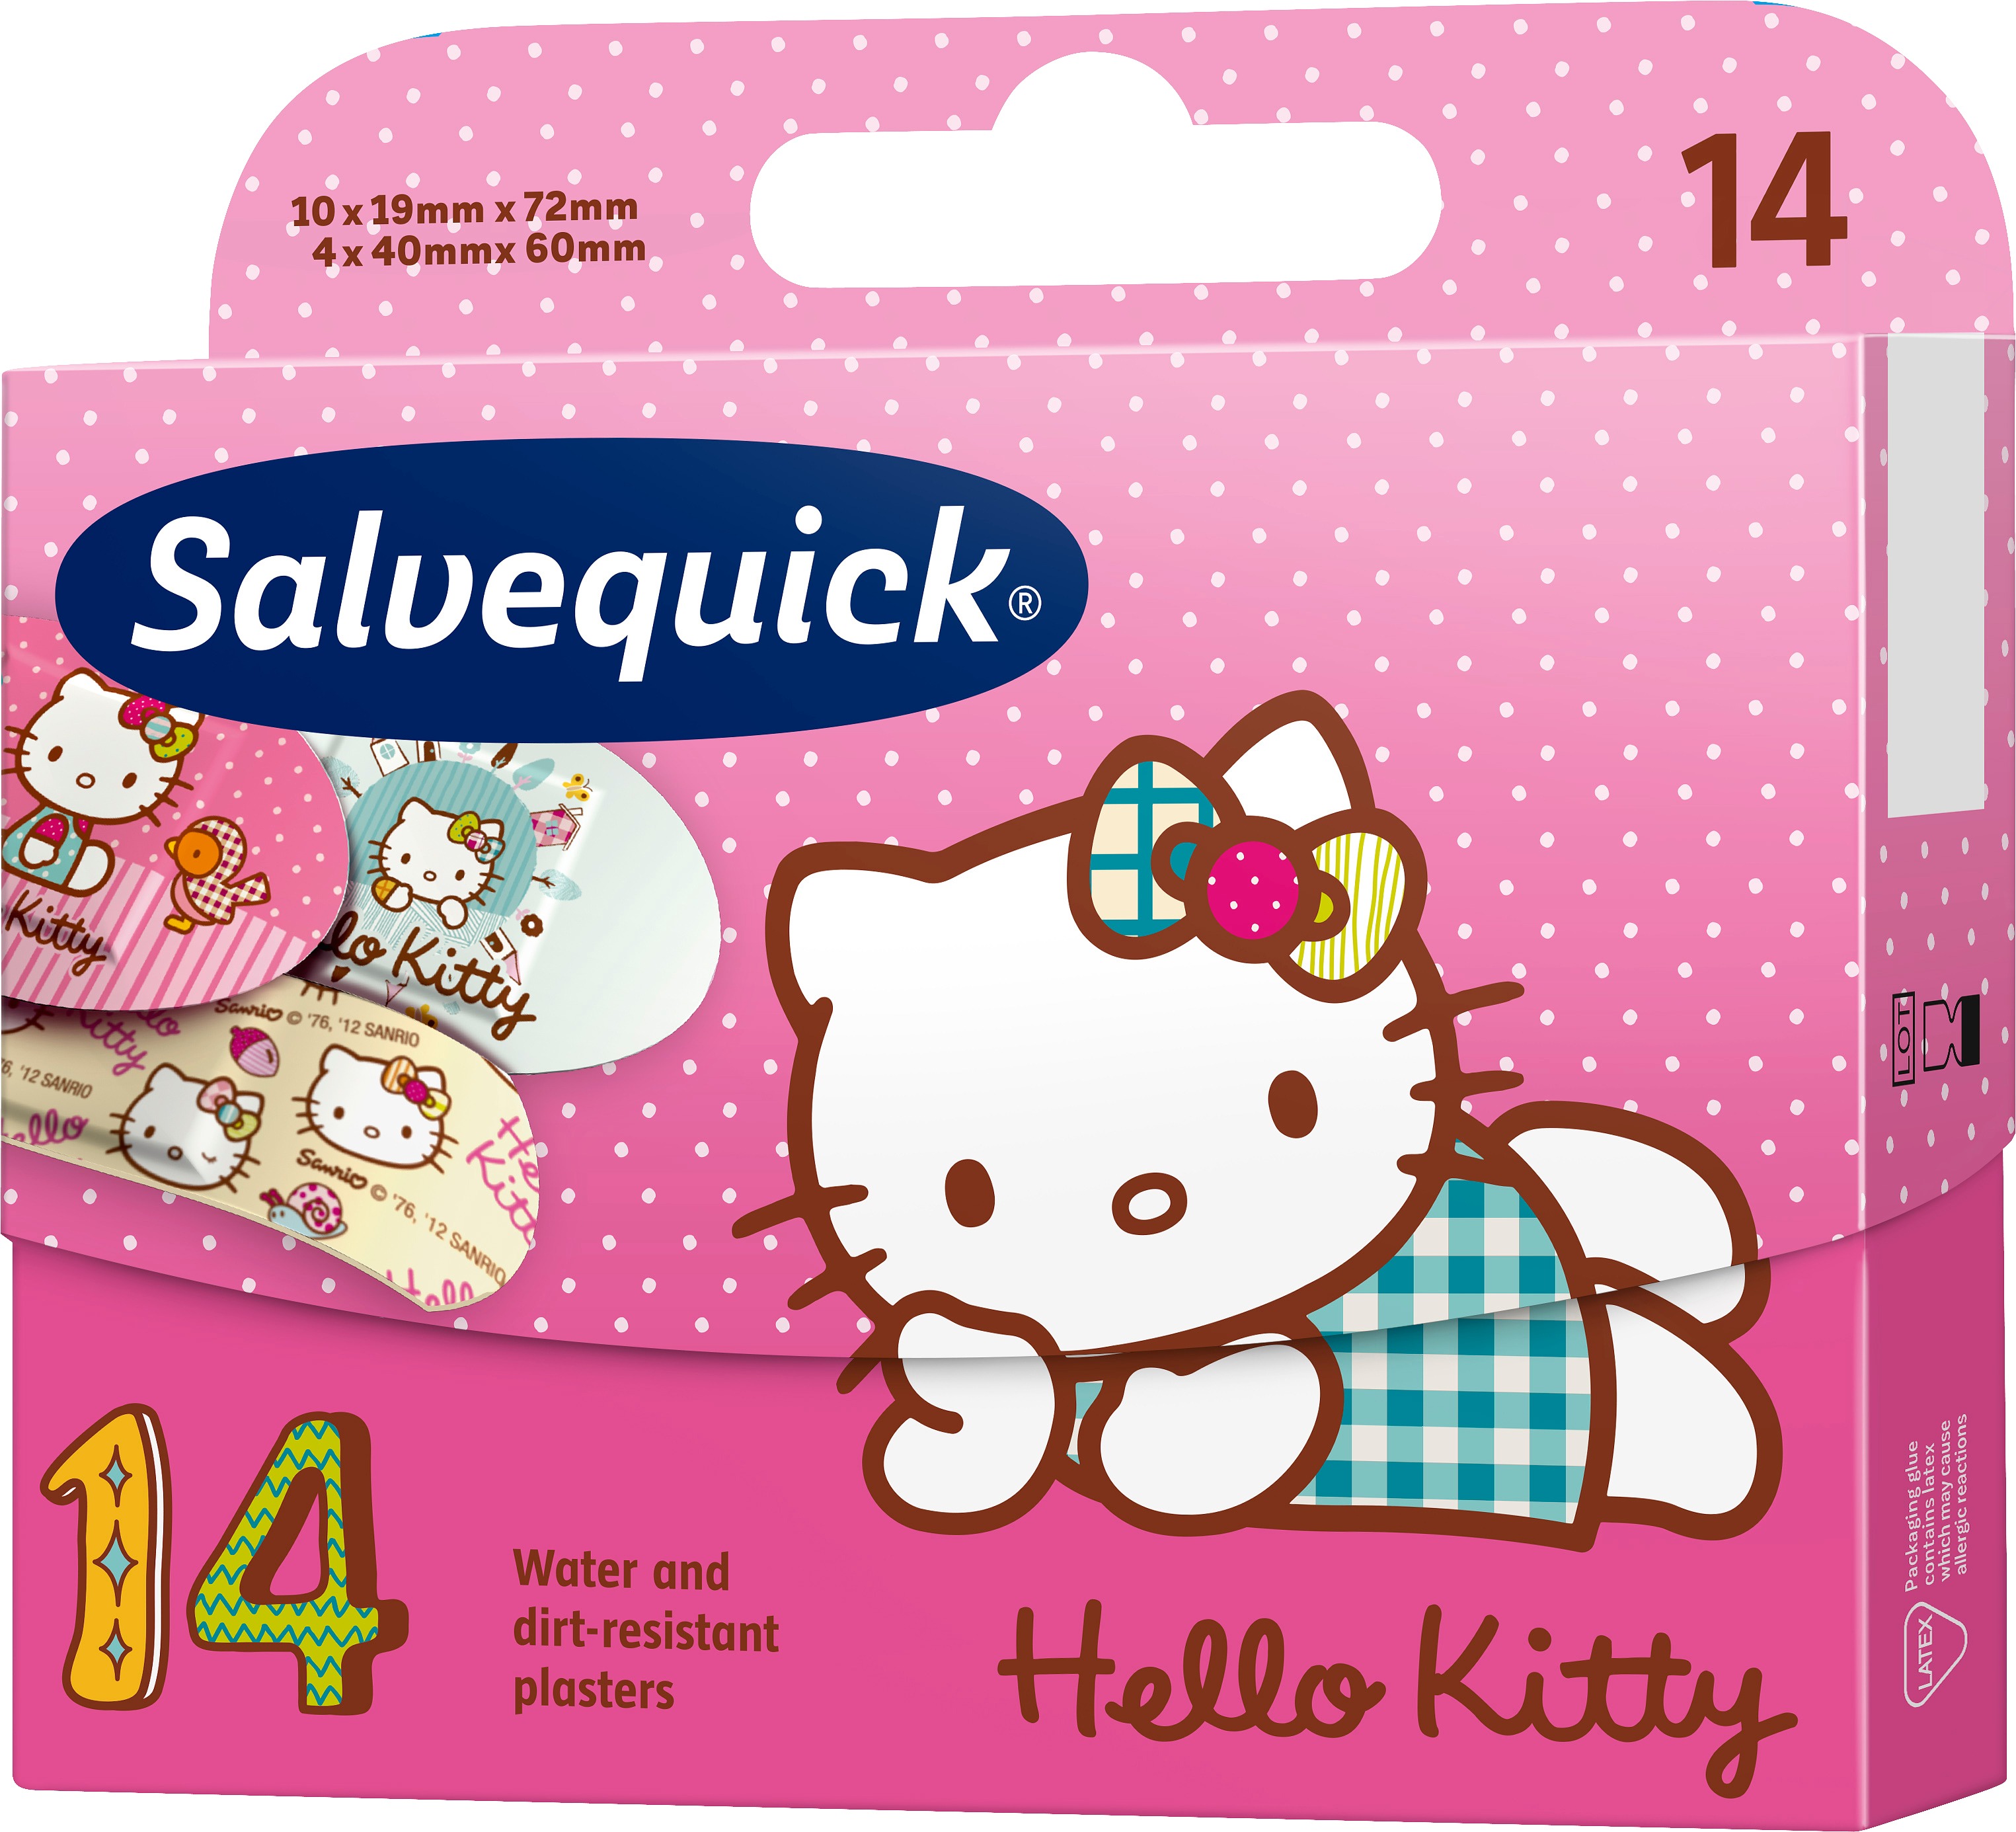 Salvequick Hello Kitty